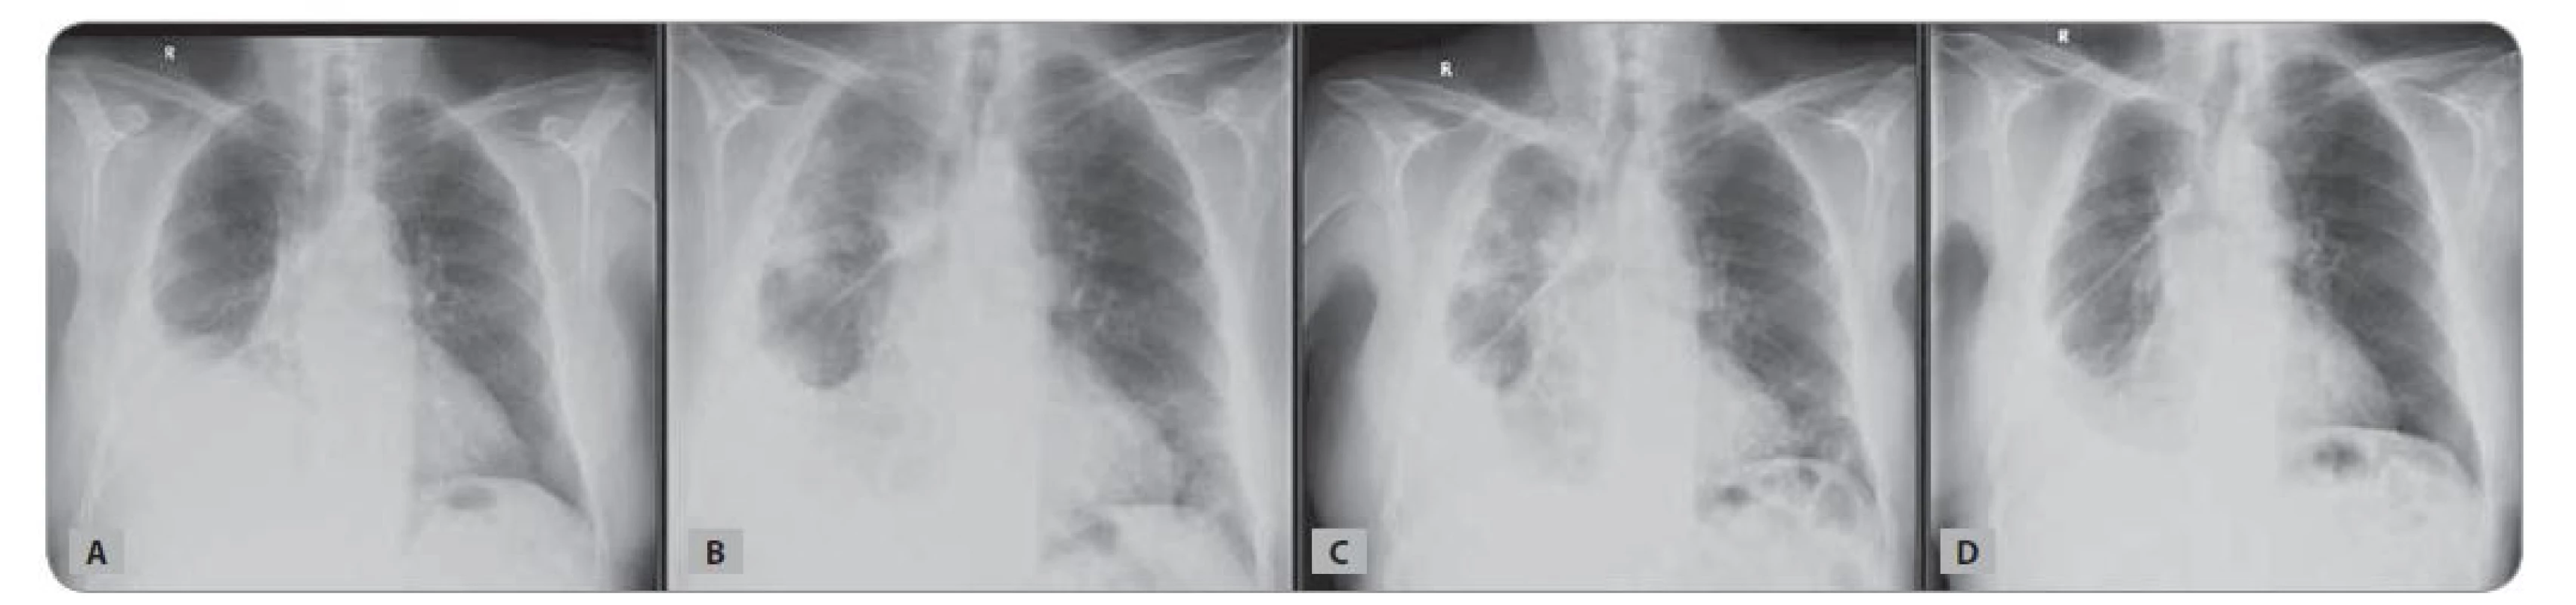 Skiagram hrudníku nemocného z Kazuistiky 1: A) v době zahájení chemoterapie; B) v době pneumonie COVID-19; C) při hodnocení
efektu léčby; D) v odstupu 3 měsíců od koronavirové infekce.